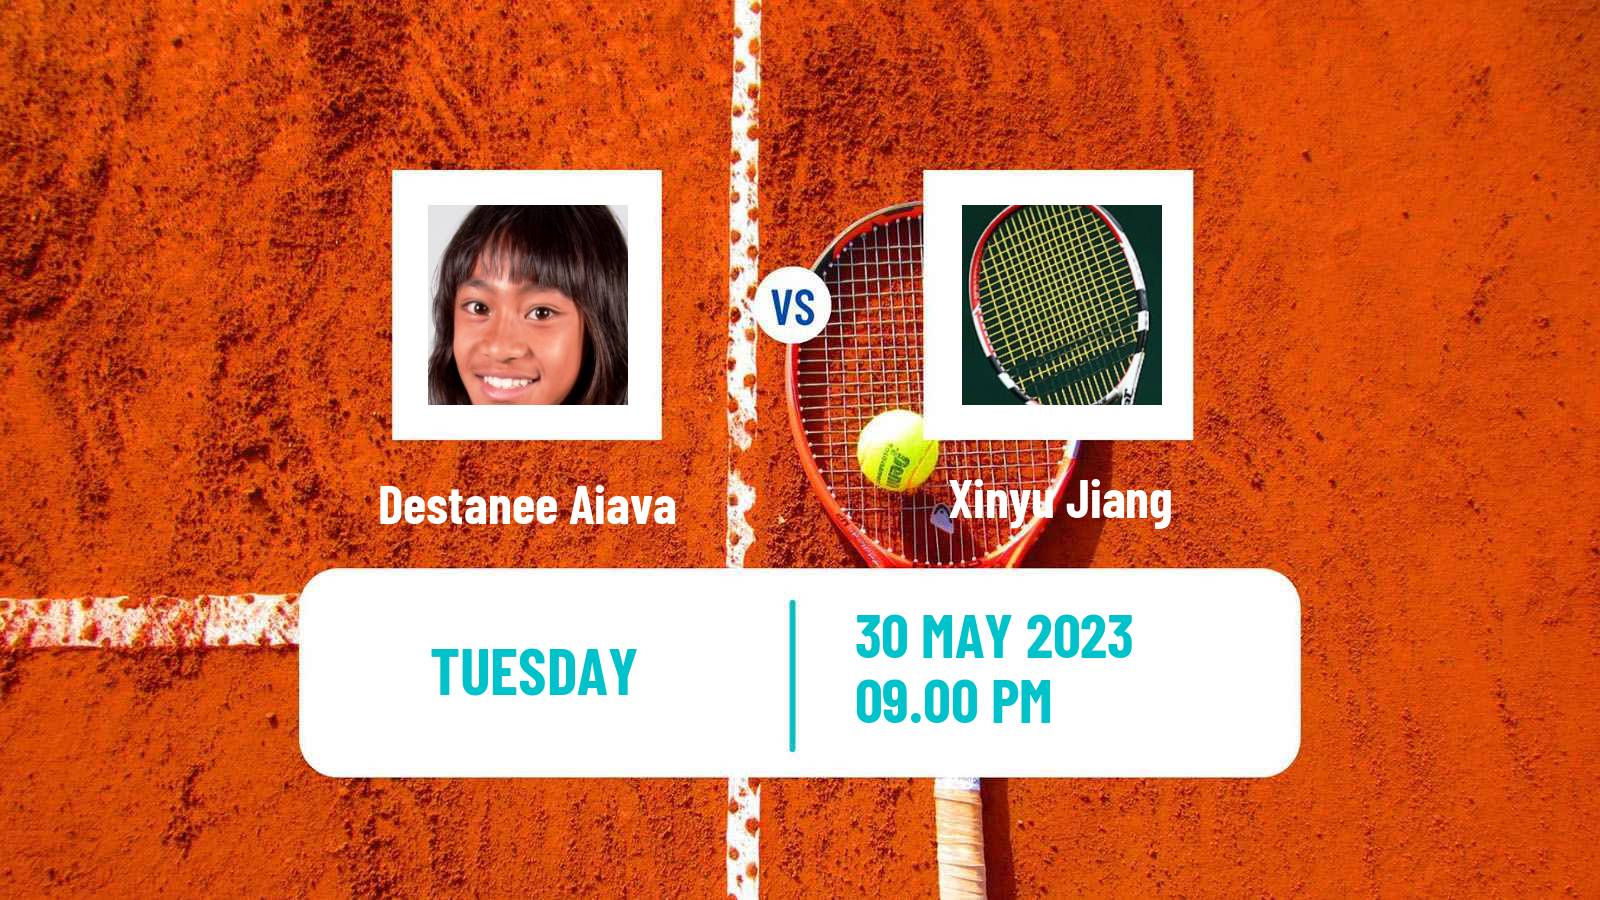 Tennis ITF W25 Changwon Women Destanee Aiava - Xinyu Jiang